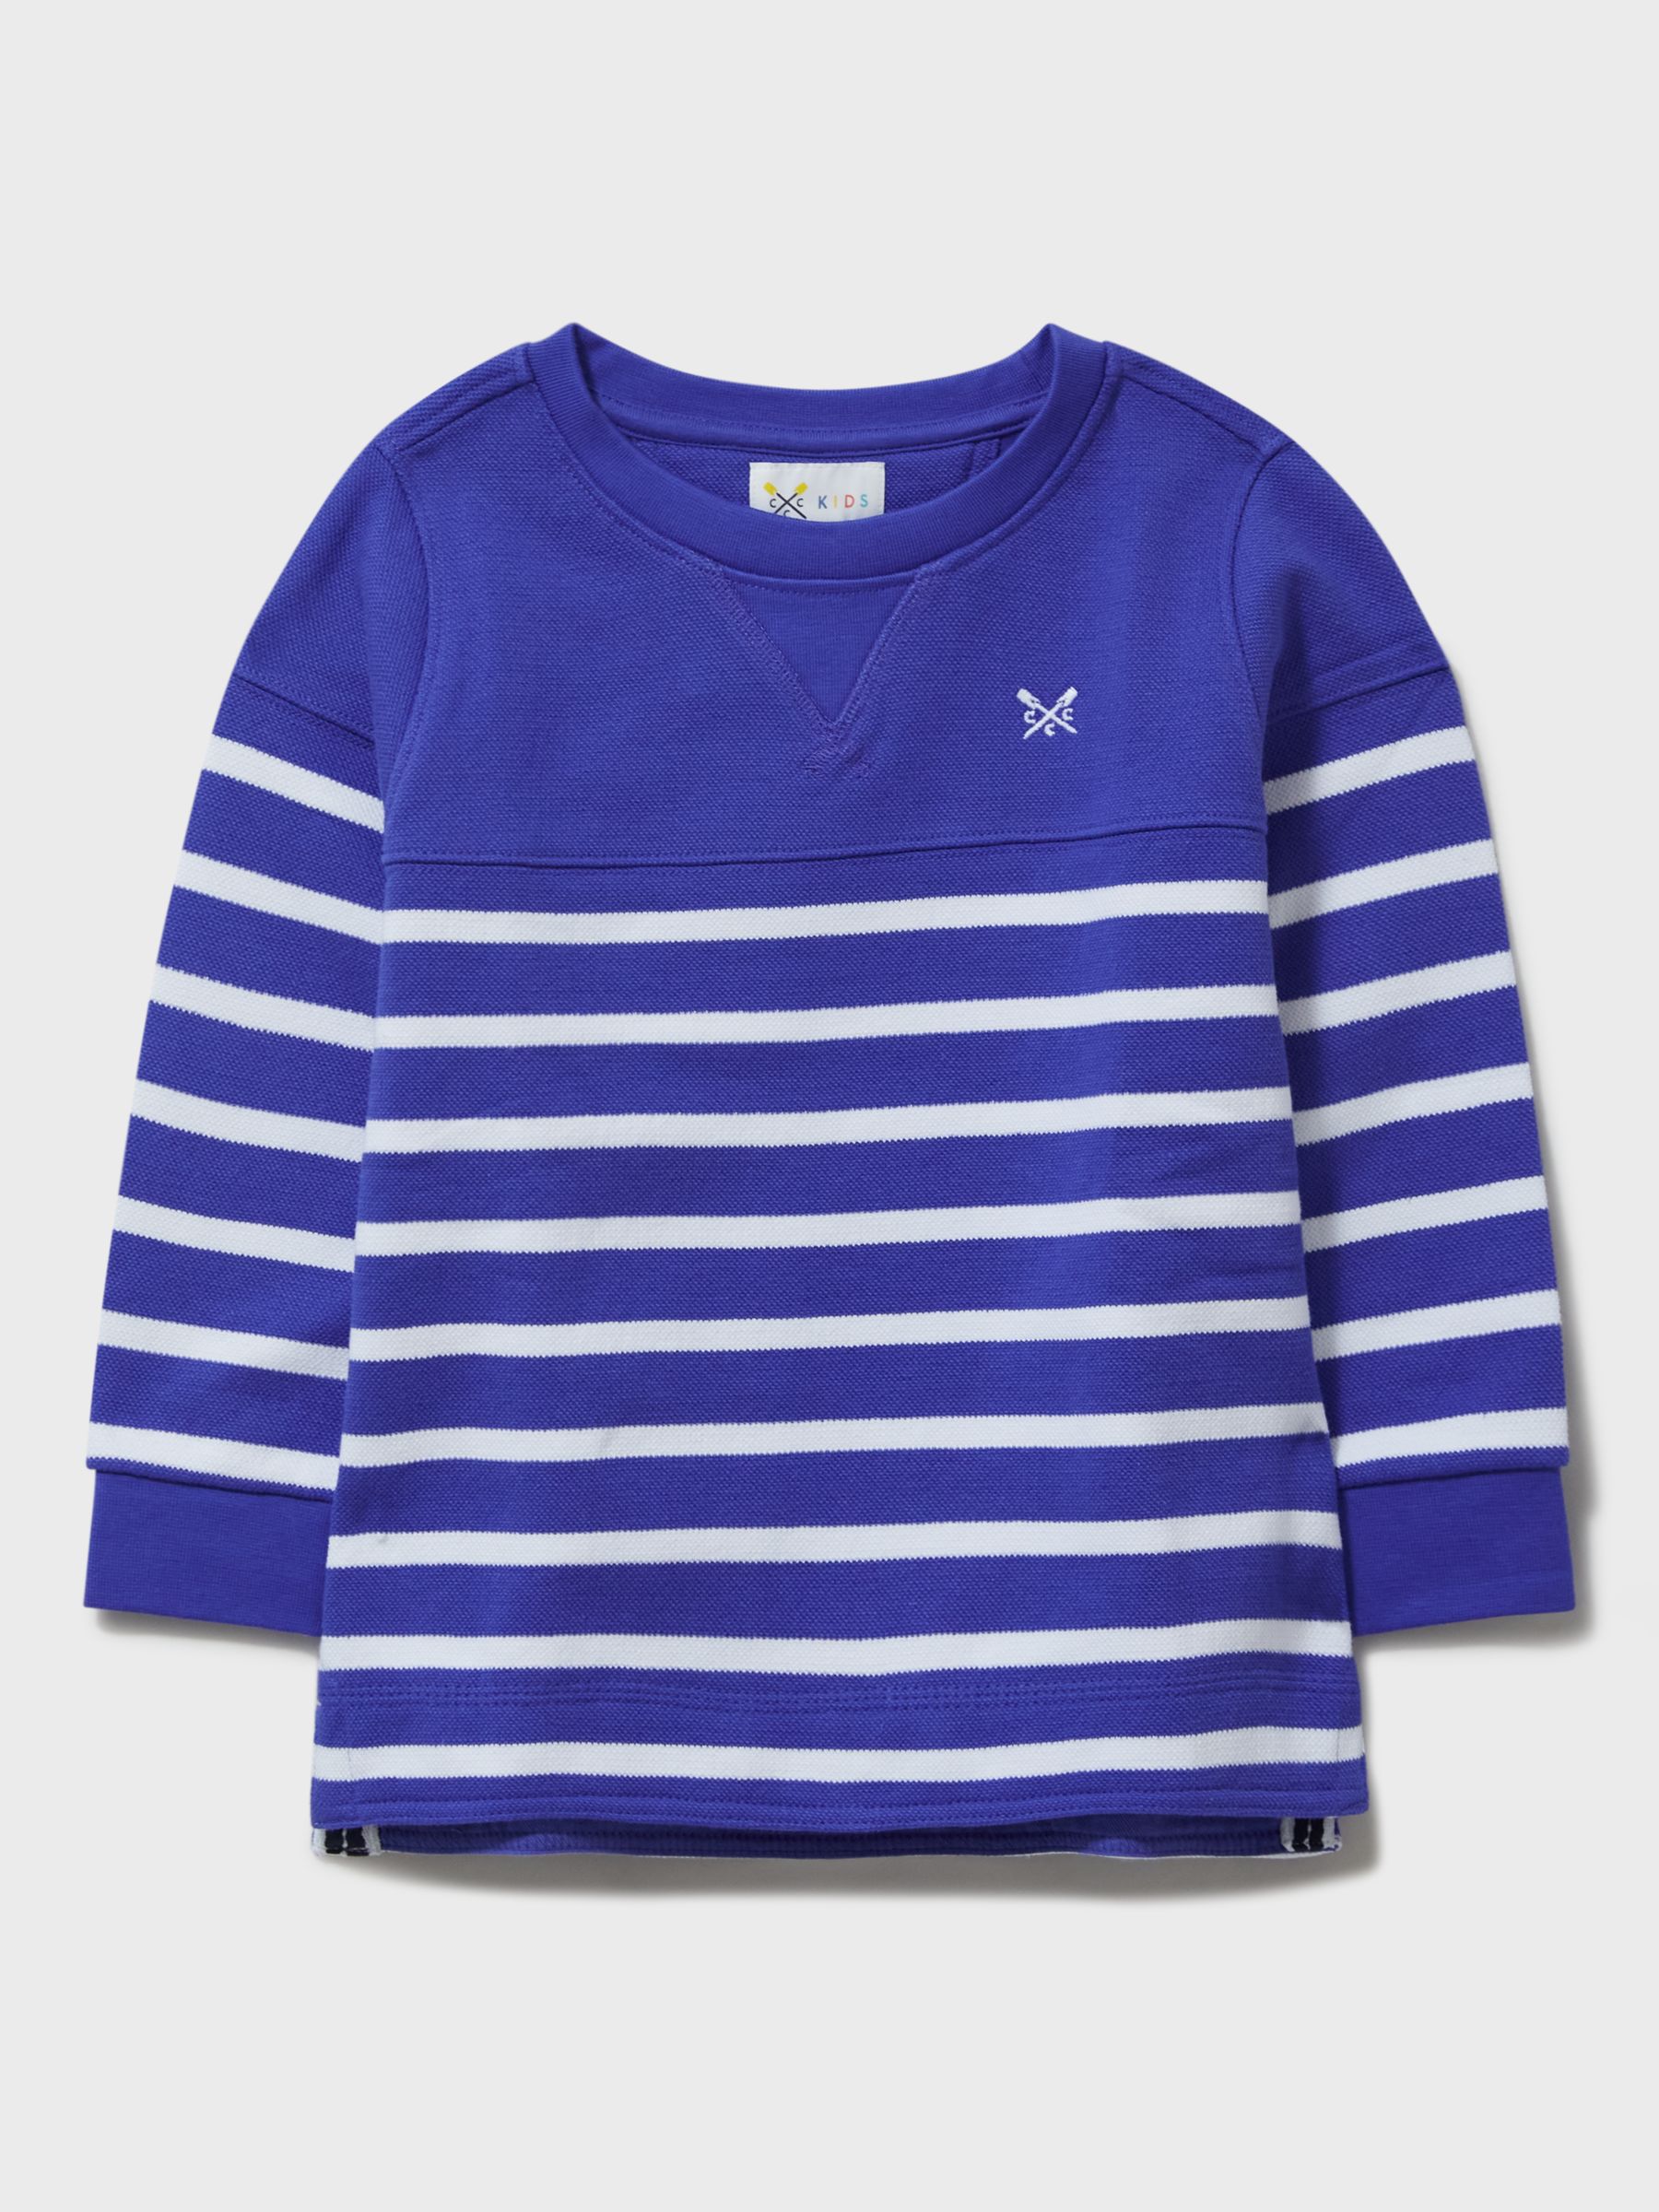 Crew Clothing Kids' Padstow Stripe Sweatshirt, Blue at John Lewis ...